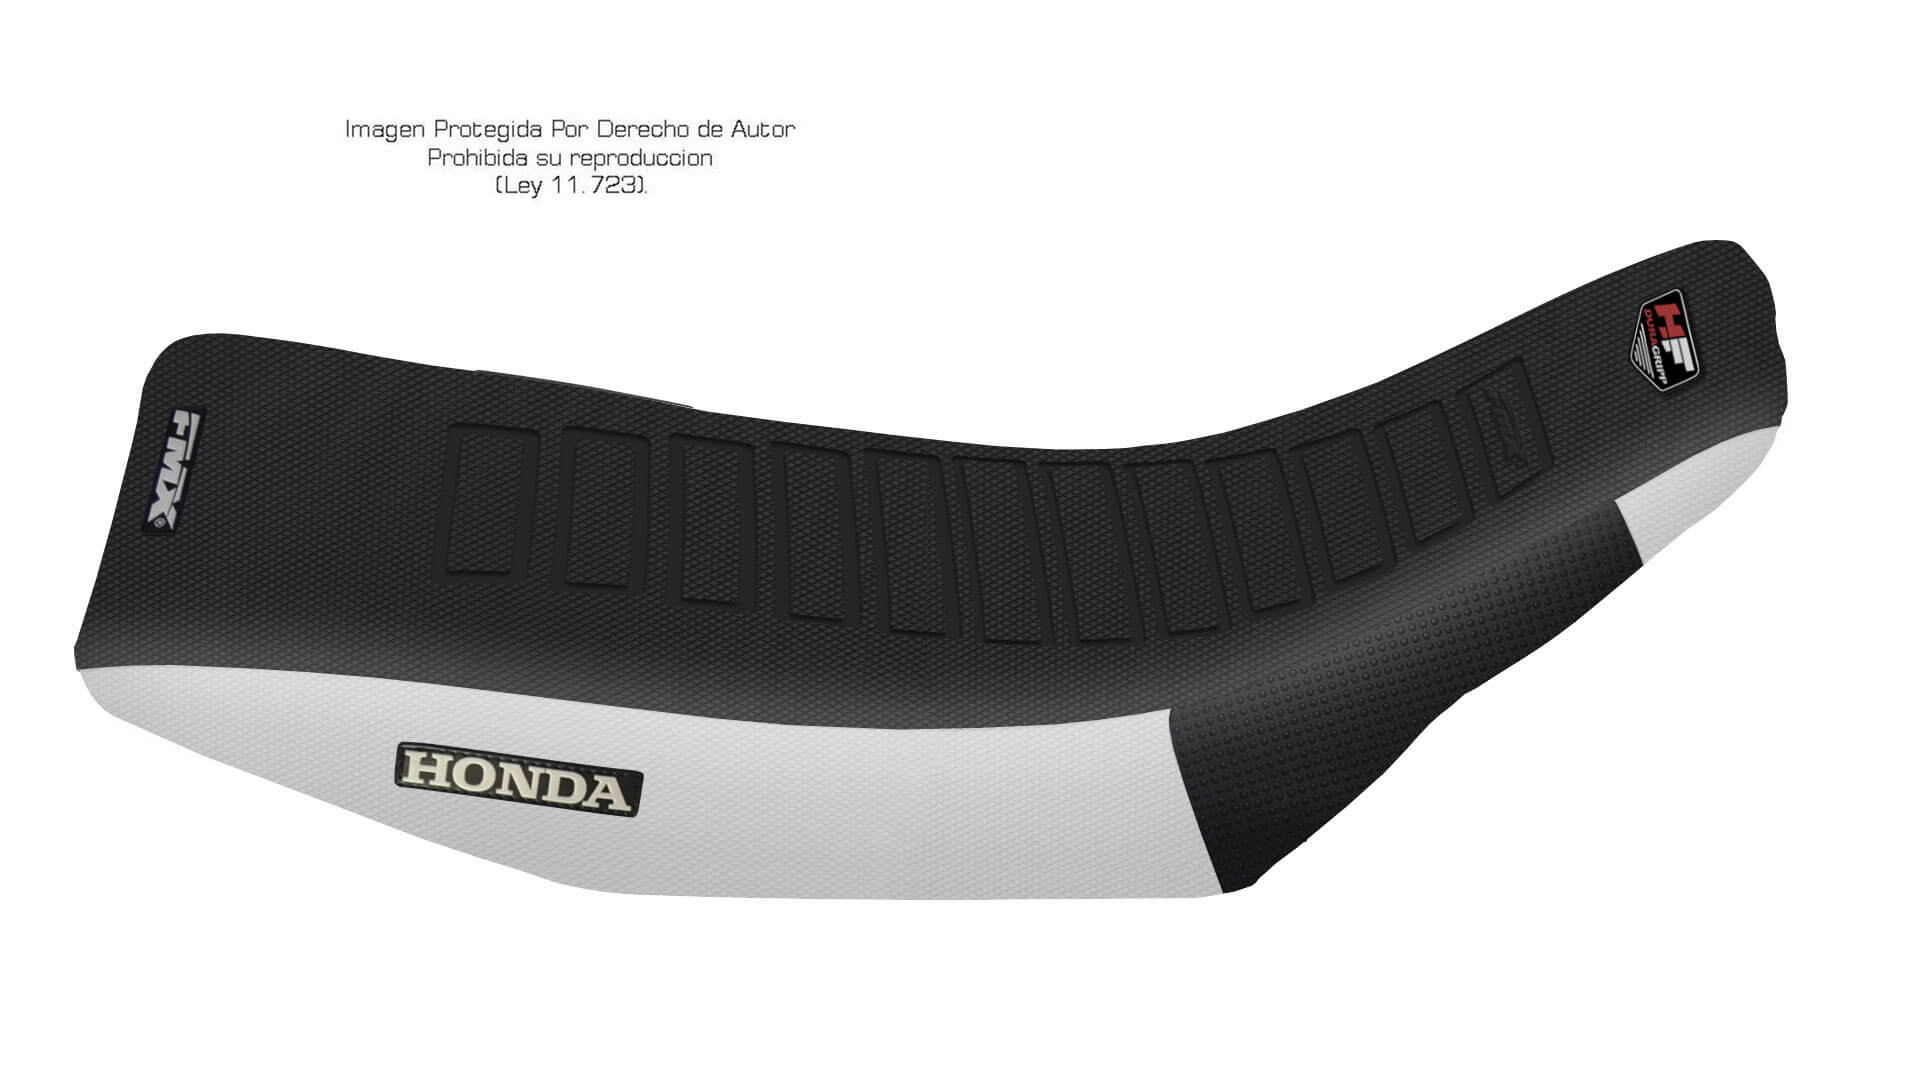 Funda Asiento Honda CRM 125/250 - 94 Ultra Grip. Es una obra de arte artesanal fabricada en Argentina, nuestros productos son de la mejor calidad.